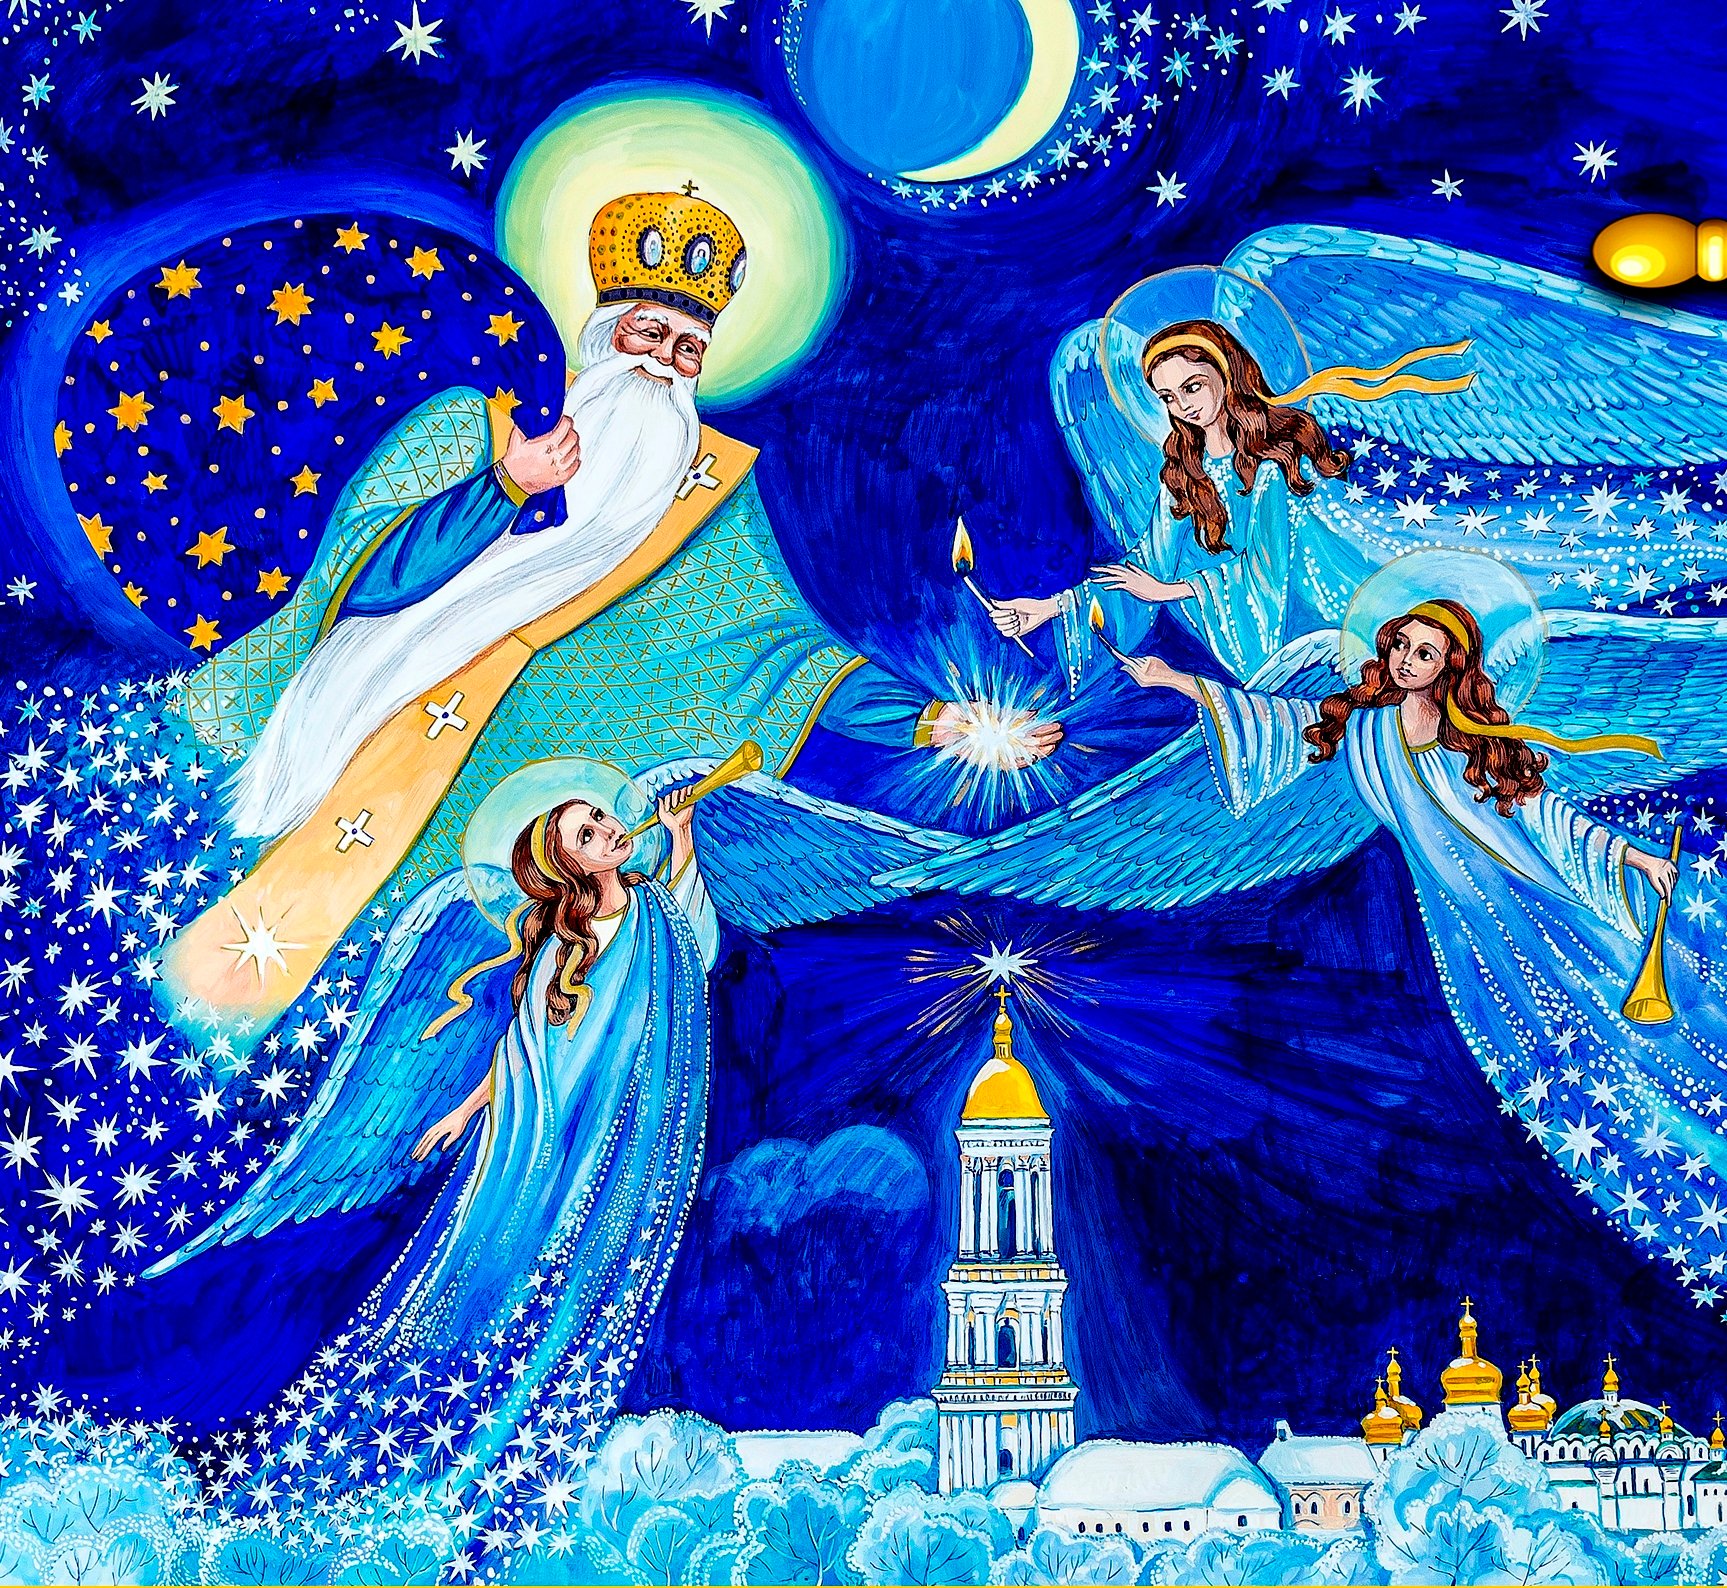 С Днем Святого Николая 2021: картинки и открытки с праздником Николая - фото 416194